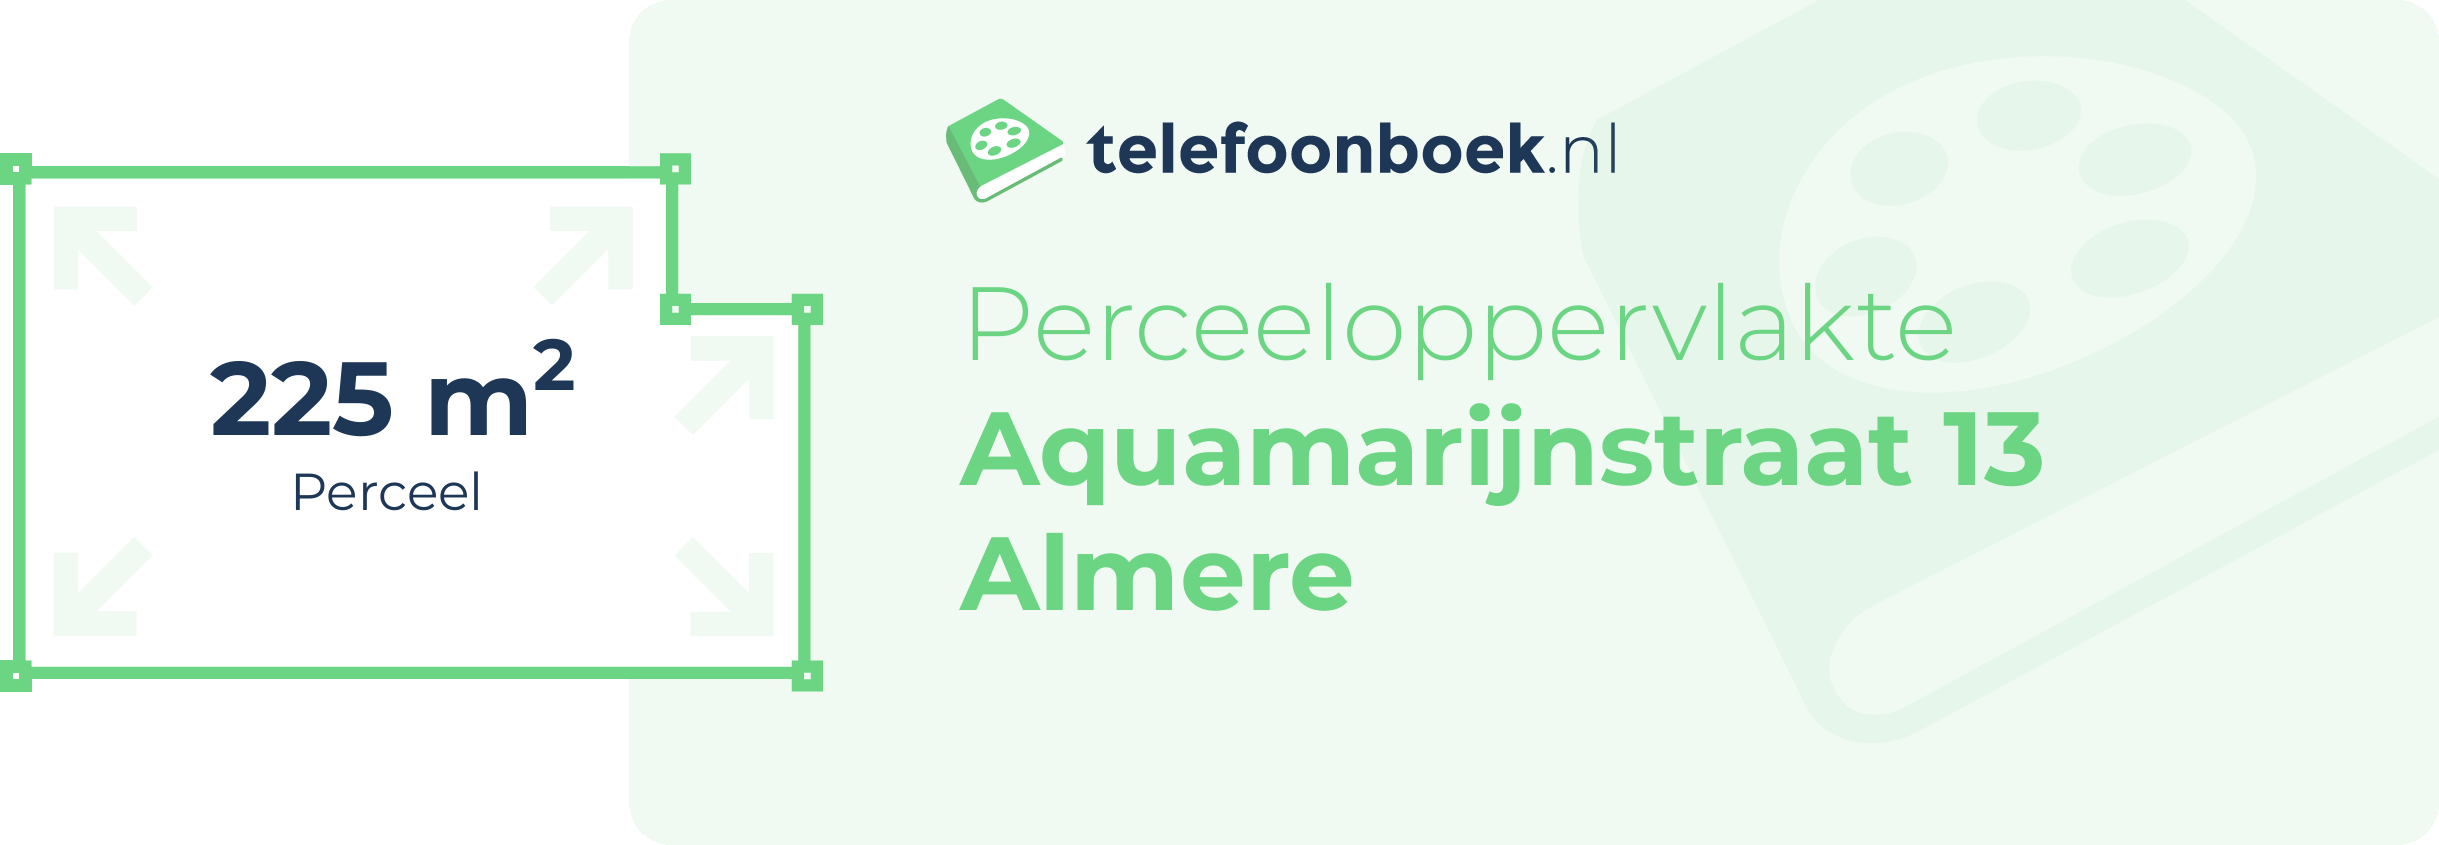 Perceeloppervlakte Aquamarijnstraat 13 Almere